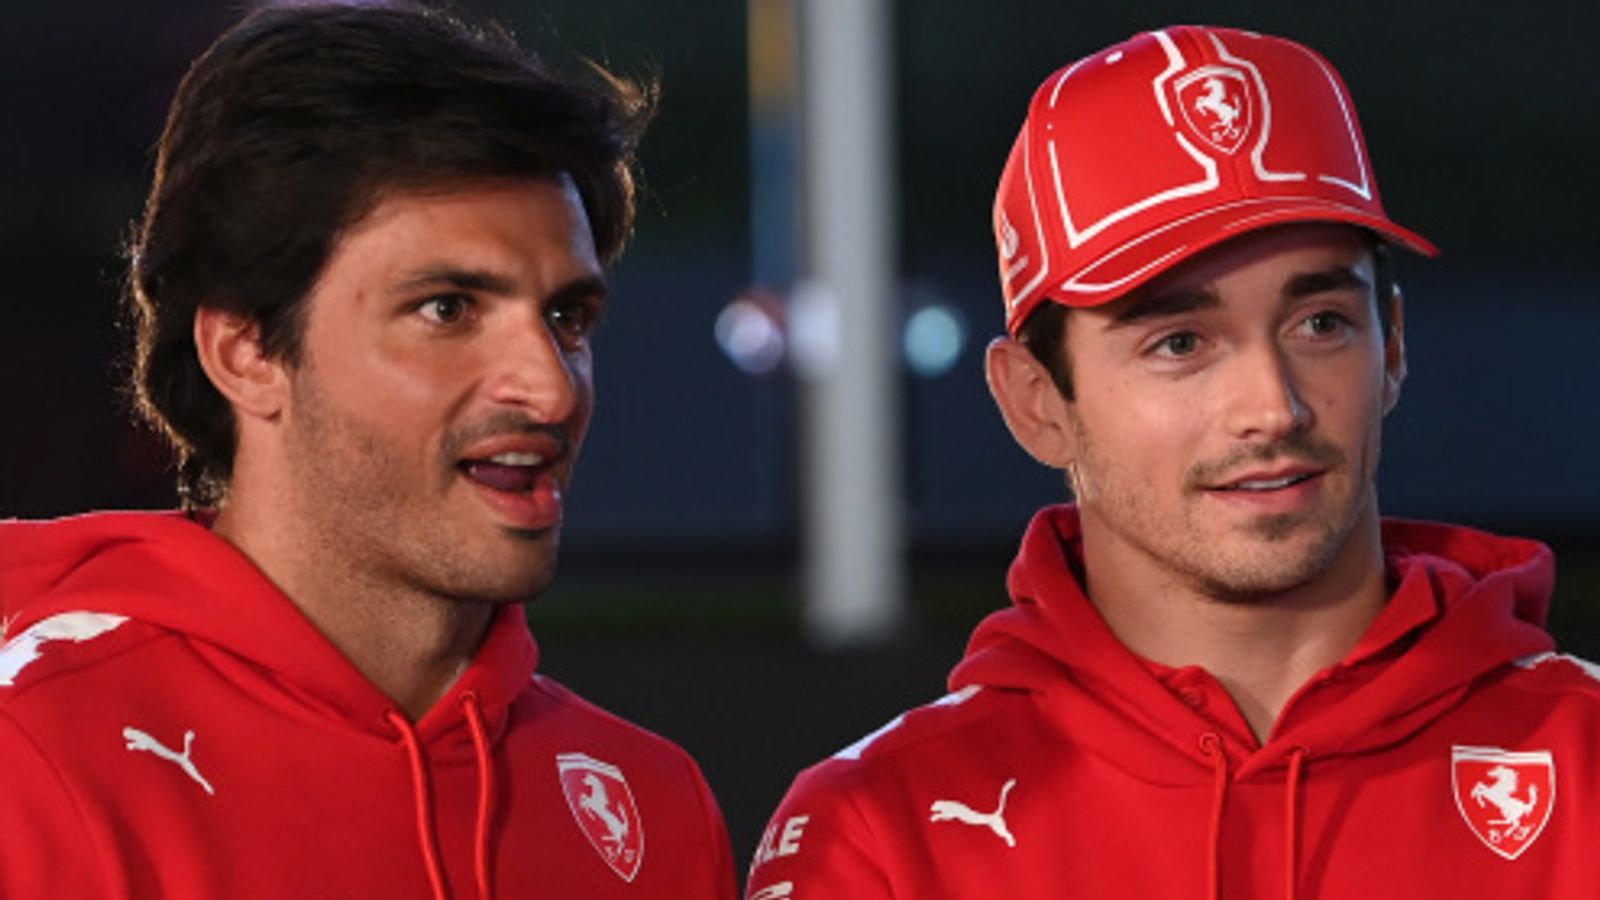 Ferrari n’est “pas pressé” de conclure de nouveaux contrats avec Charles Leclerc et Carlos Sainz, déclare Fred Vasseur, directeur de l’équipe